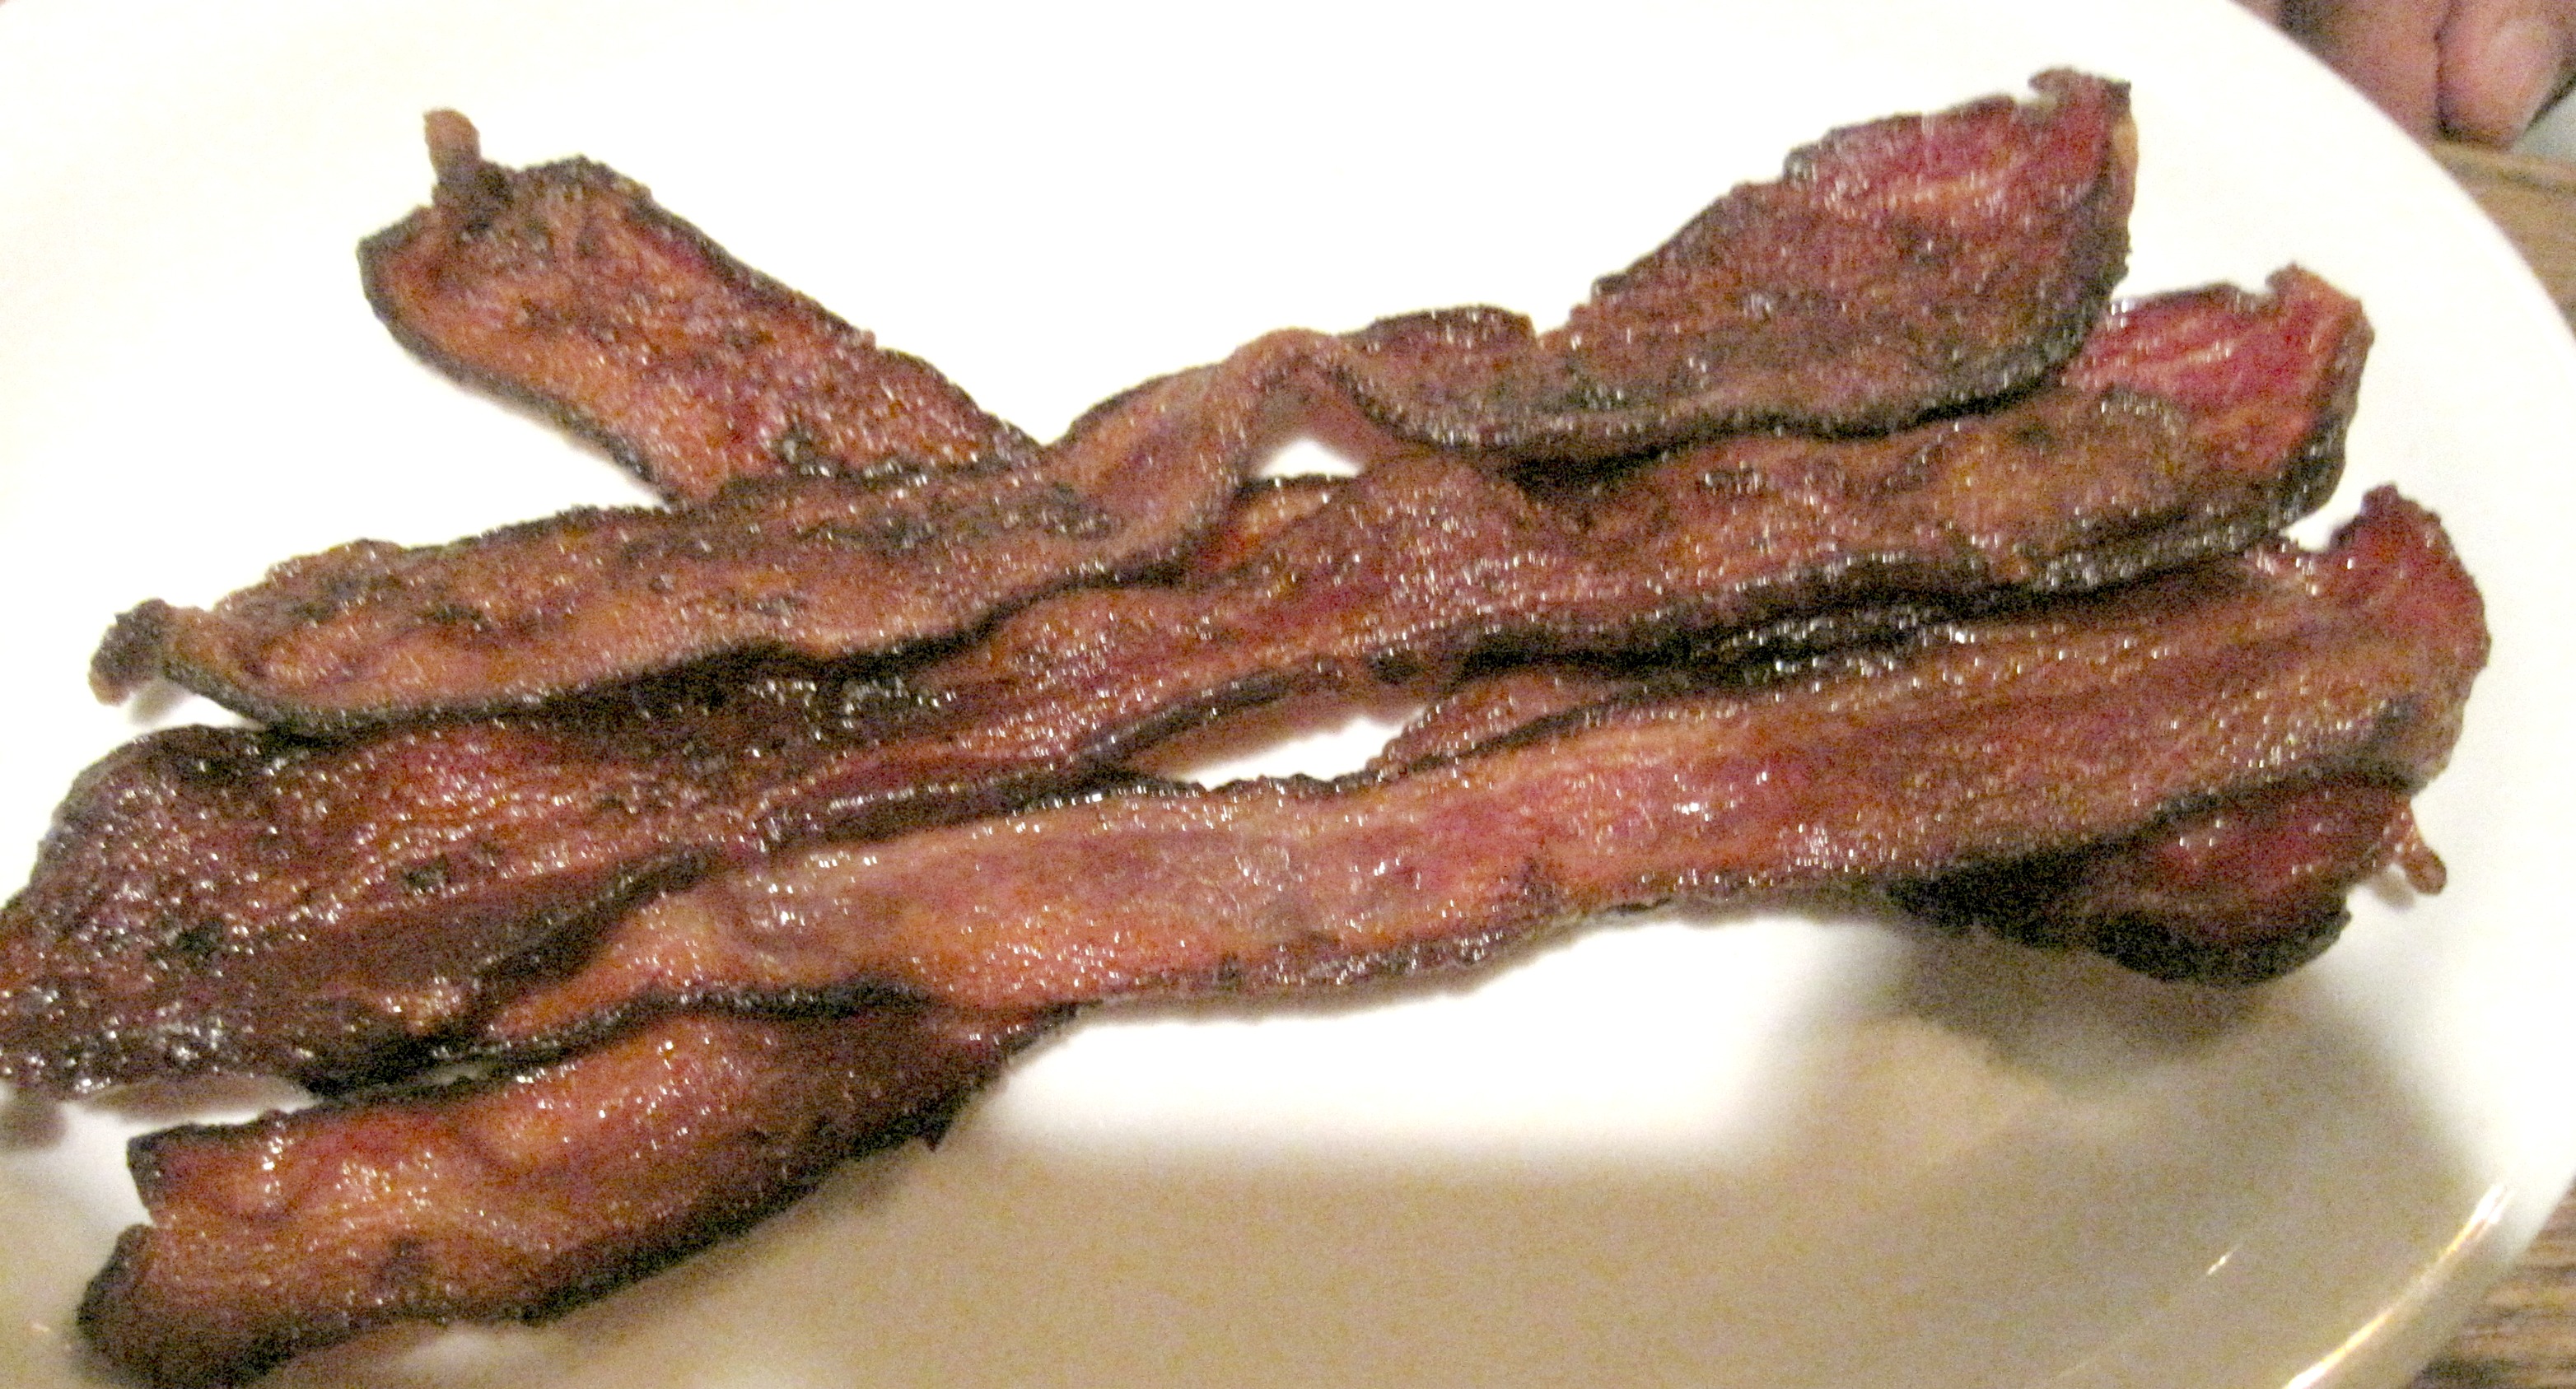 SideDoorSundaySessions Bacon